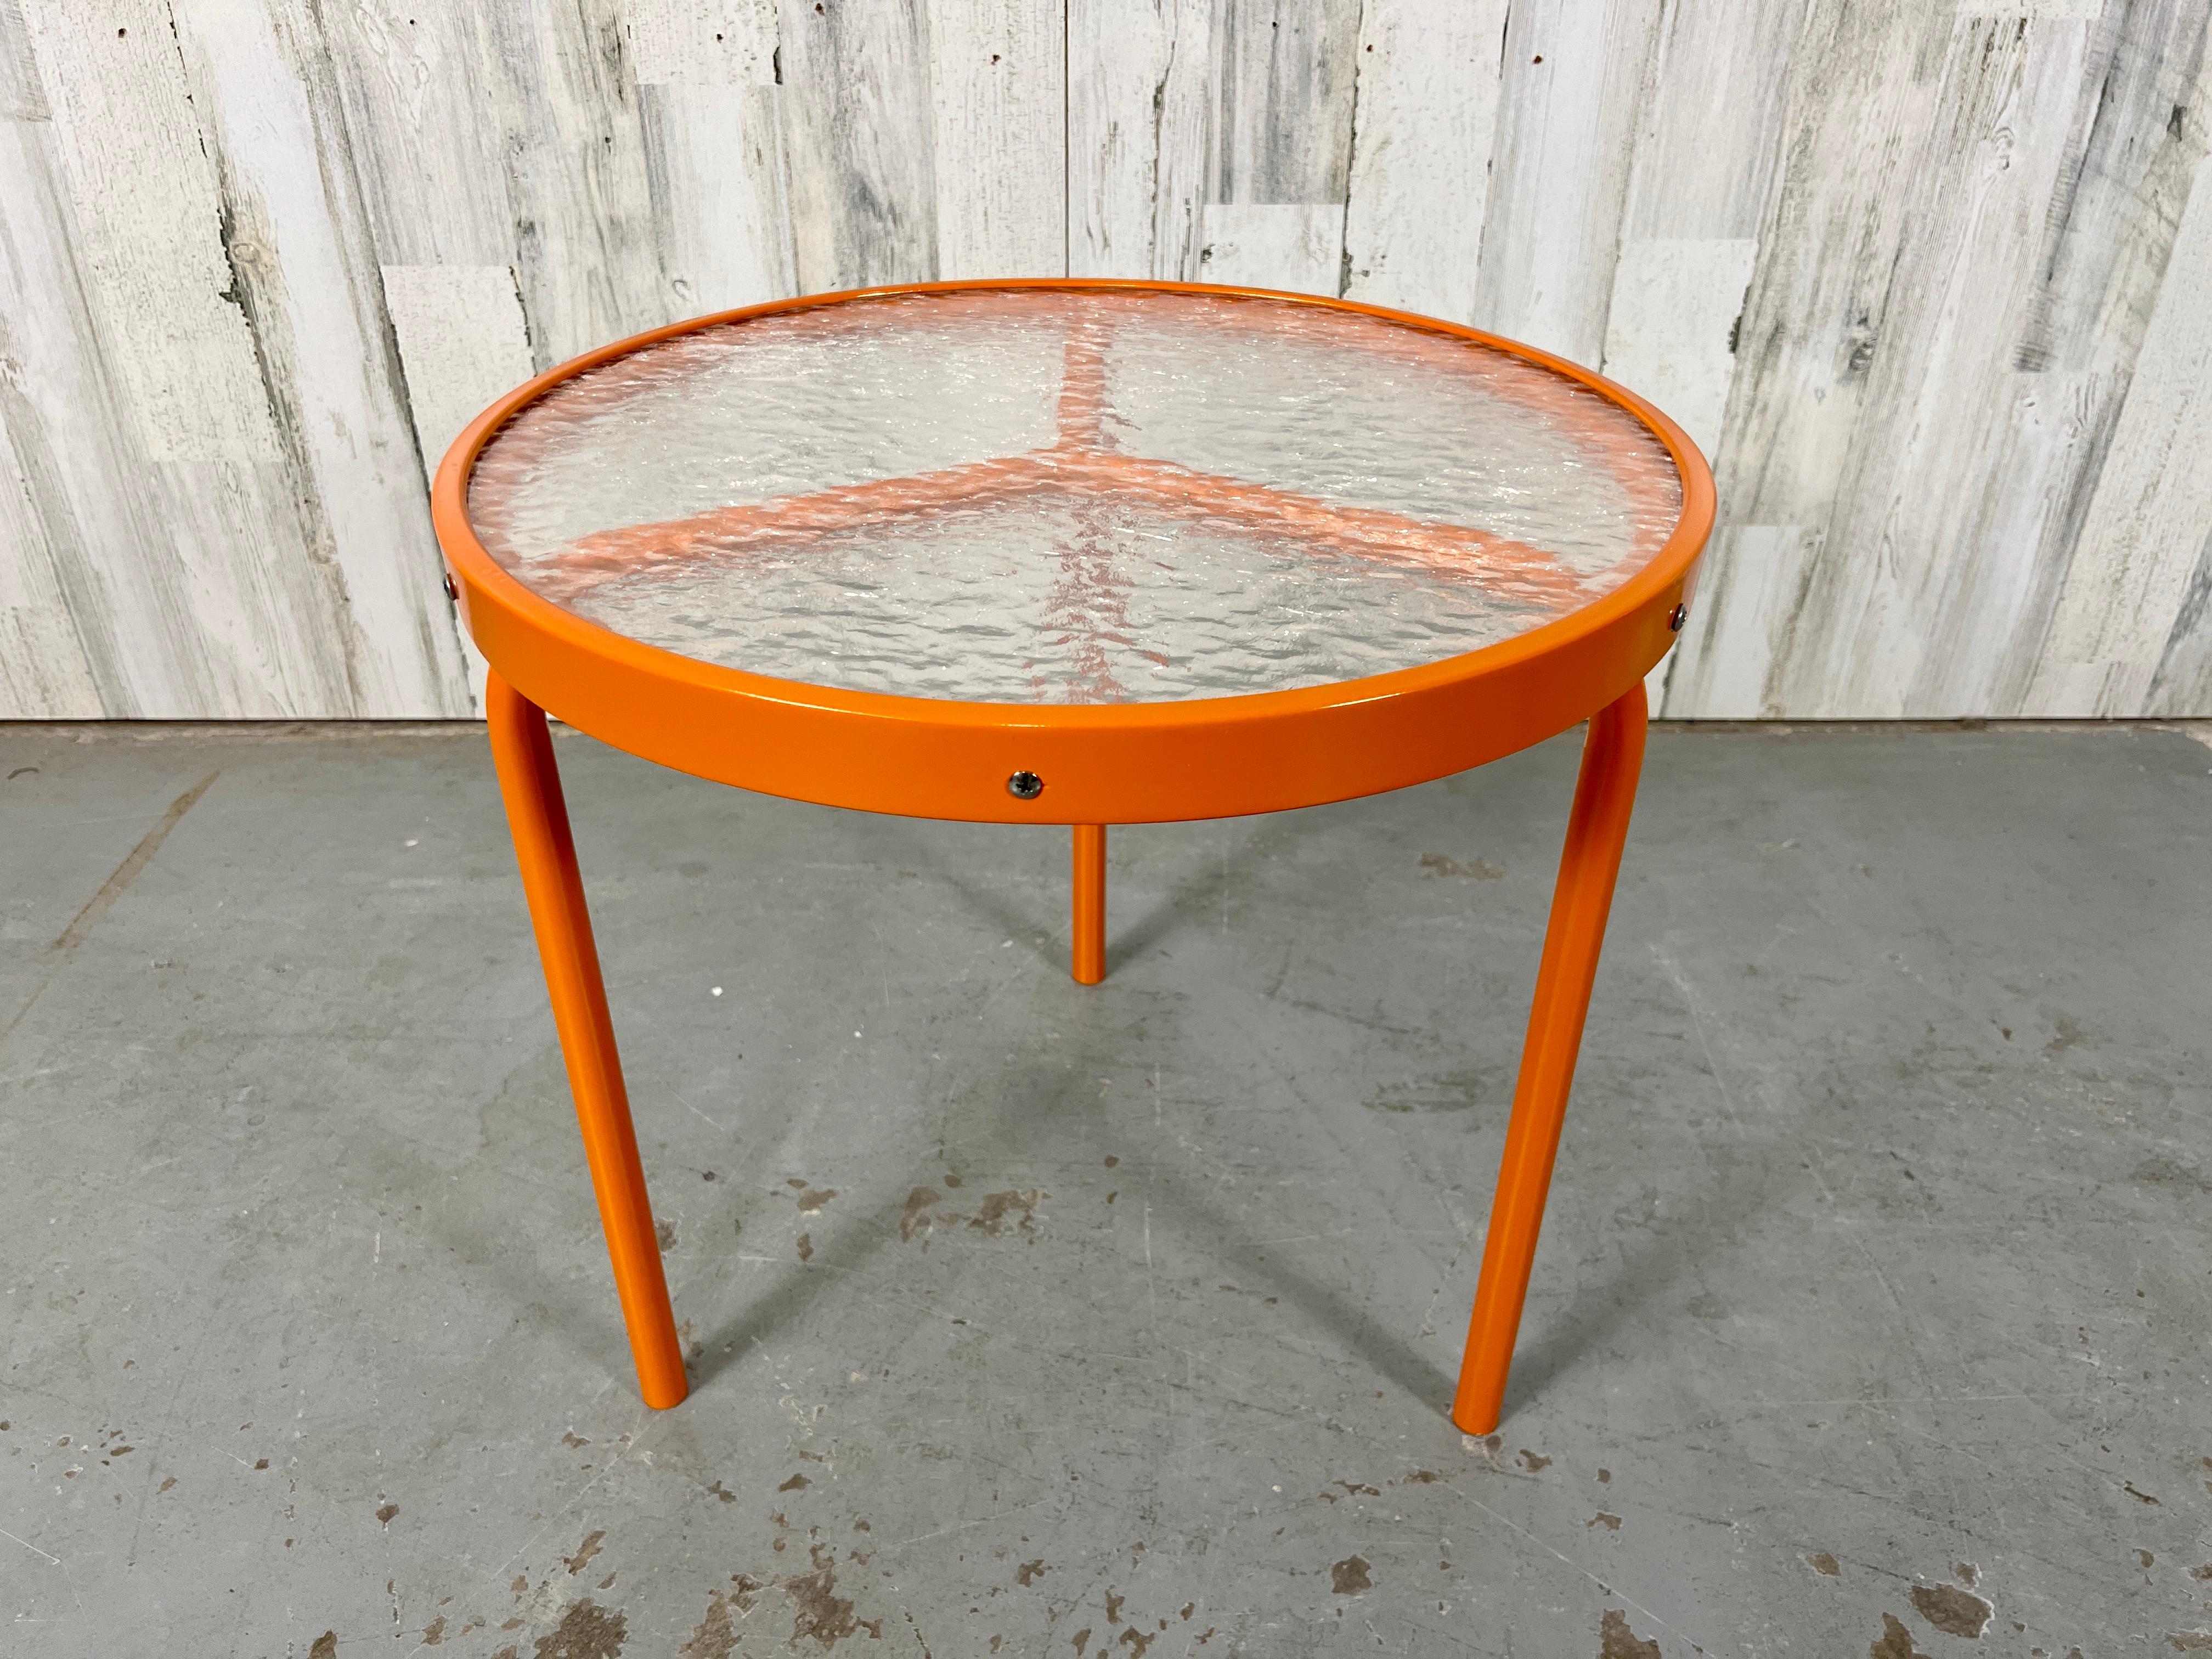 Runder dreibeiniger Beistelltisch, neu pulverbeschichtet in Citrus Orange. Dieser Tisch hat das Peace-Symbol-Design, bei dem die drei Beine zusammenkommen. Die originale Kieselstein-Acrylplatte weist einige Gebrauchsspuren auf.